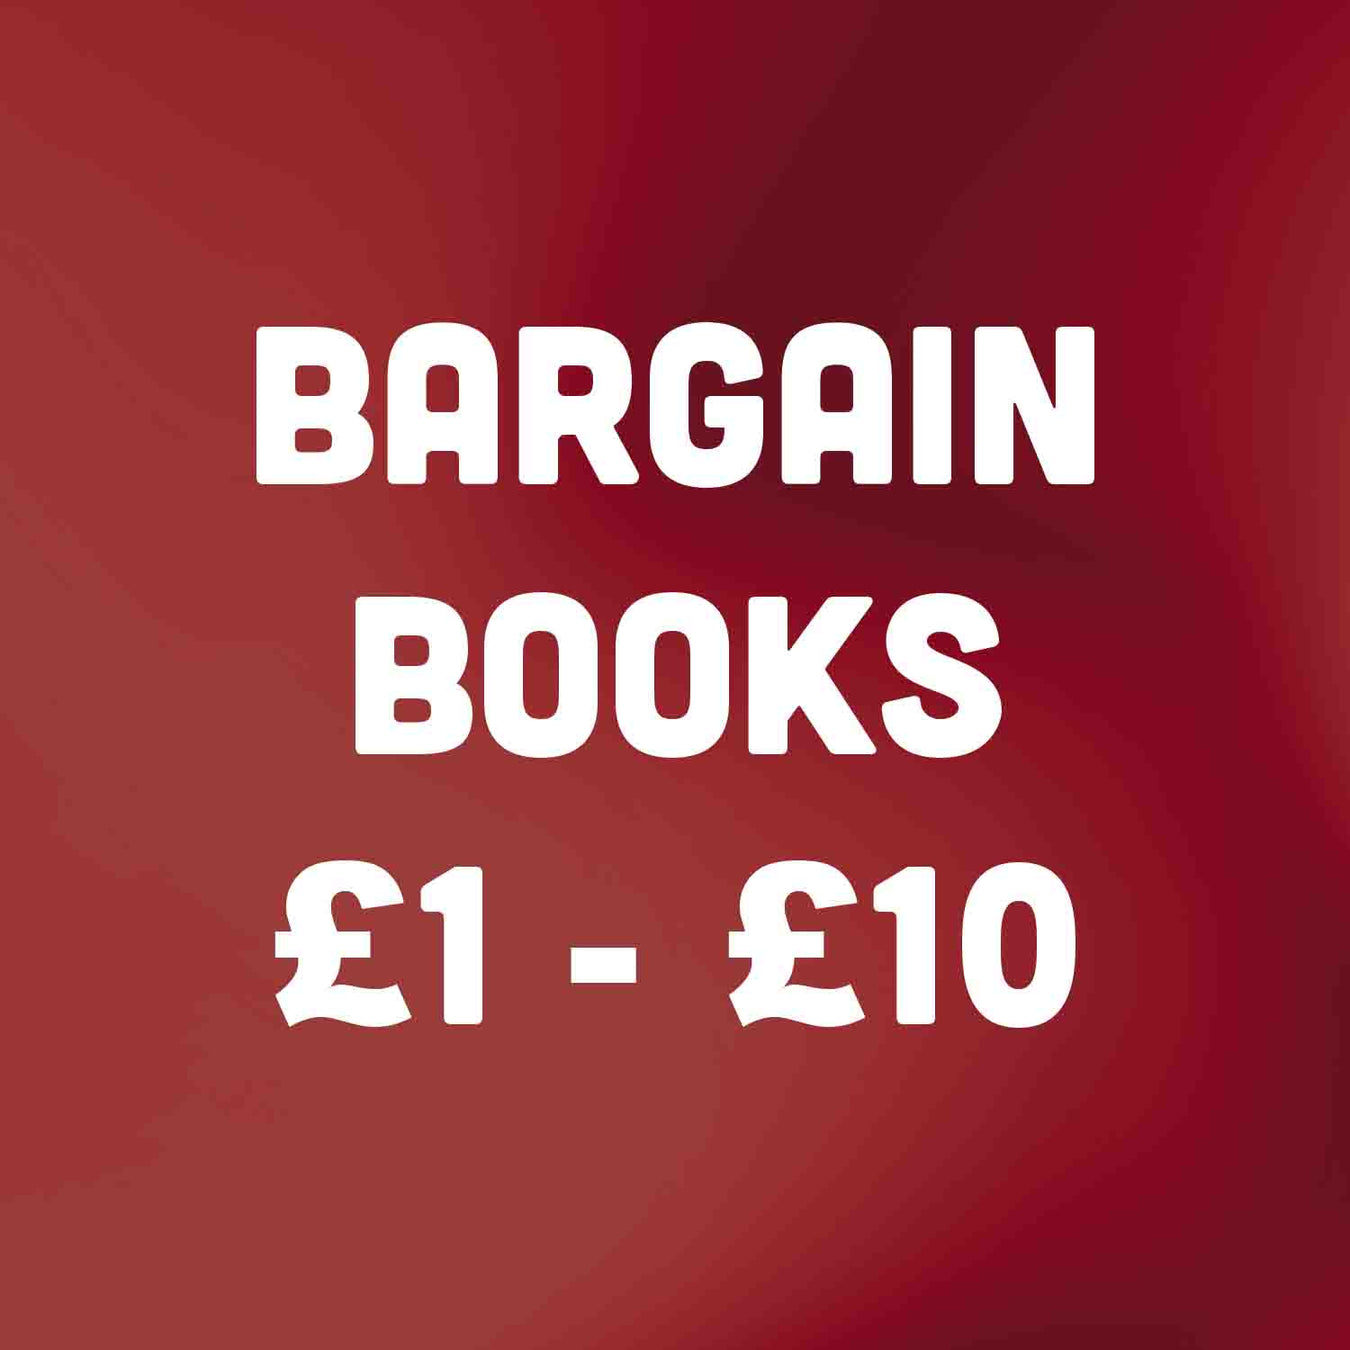 Bargain Books for £1 - £10